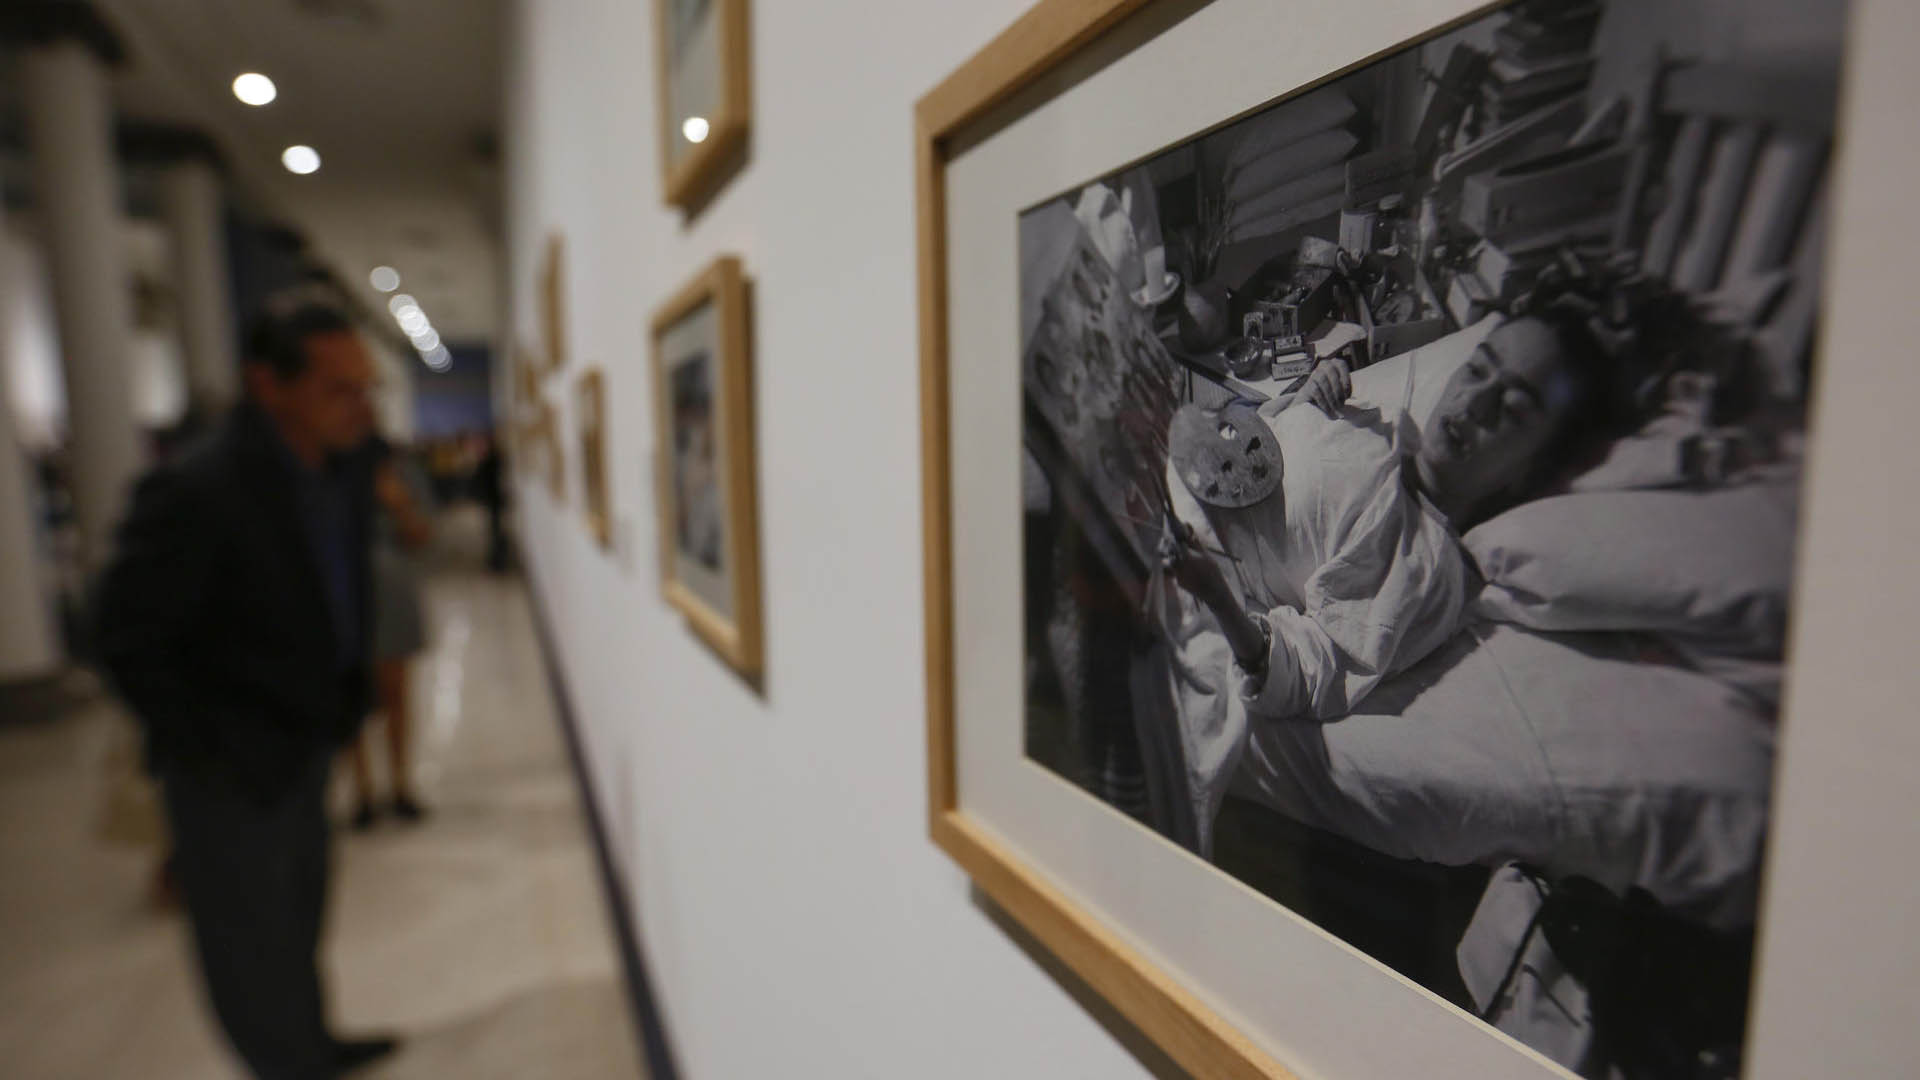 Público observa la exposición "Frida Kahlo Sin Fronteras", en el Museo de las Artes (MUSA) de la Universidad de Guadalajara (UDG) (EFE/Francisco Guasco)
